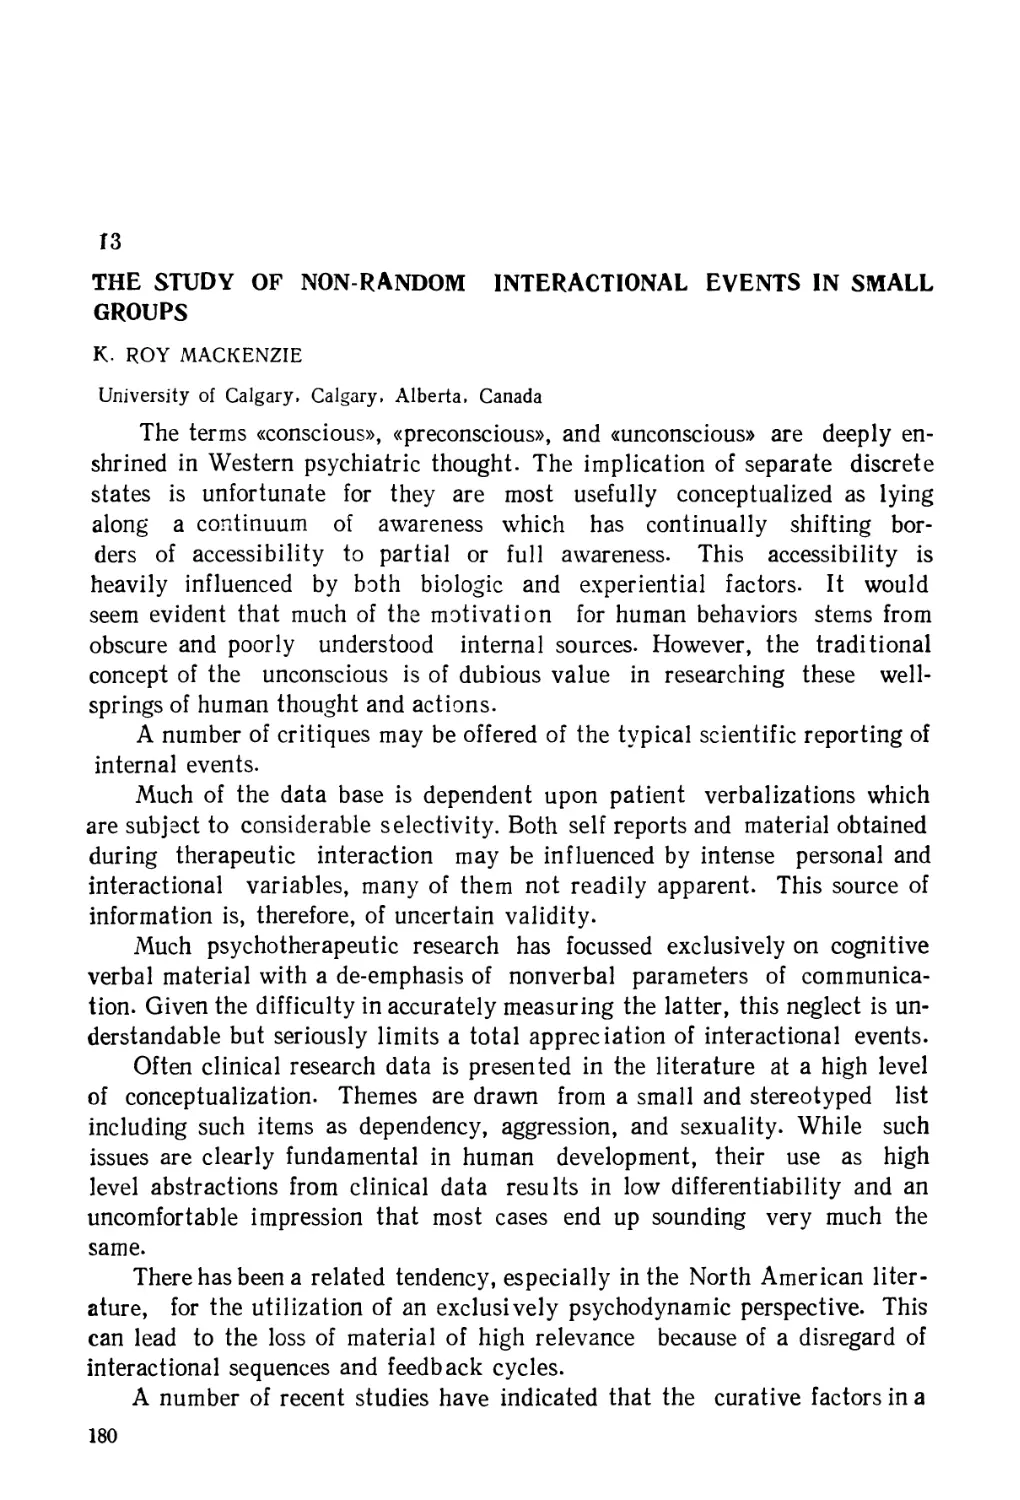 13. Исследование неслучайных событий взаимодействия в малых группах - Р. Мак-Кензи
13. The Study of Non-Random Interactional Events in Small Groups - K. R. MacKenzie